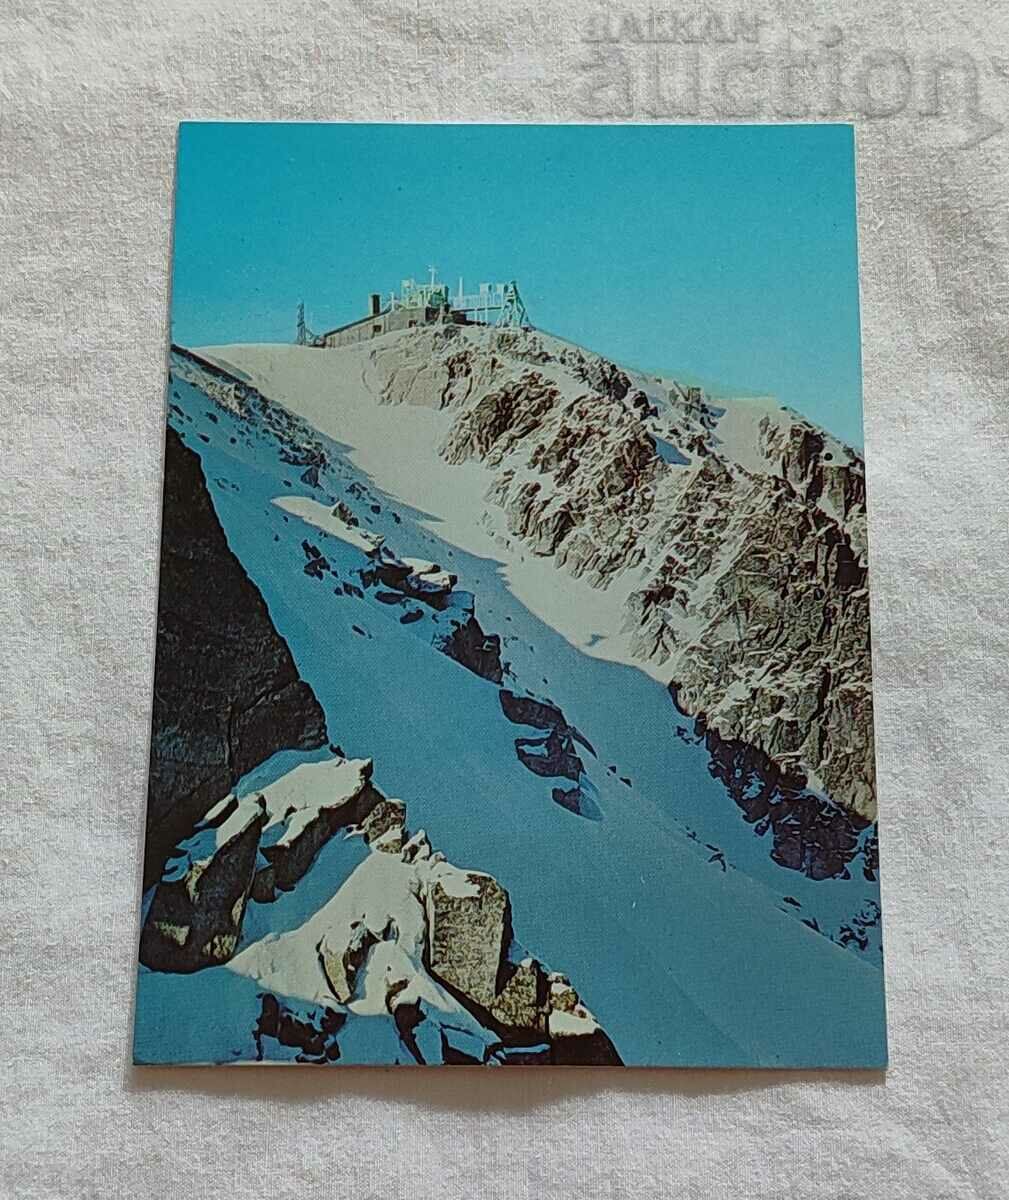 RILA THE OBSERVATORY ON THE MOUNT MUSALA P.K.1984